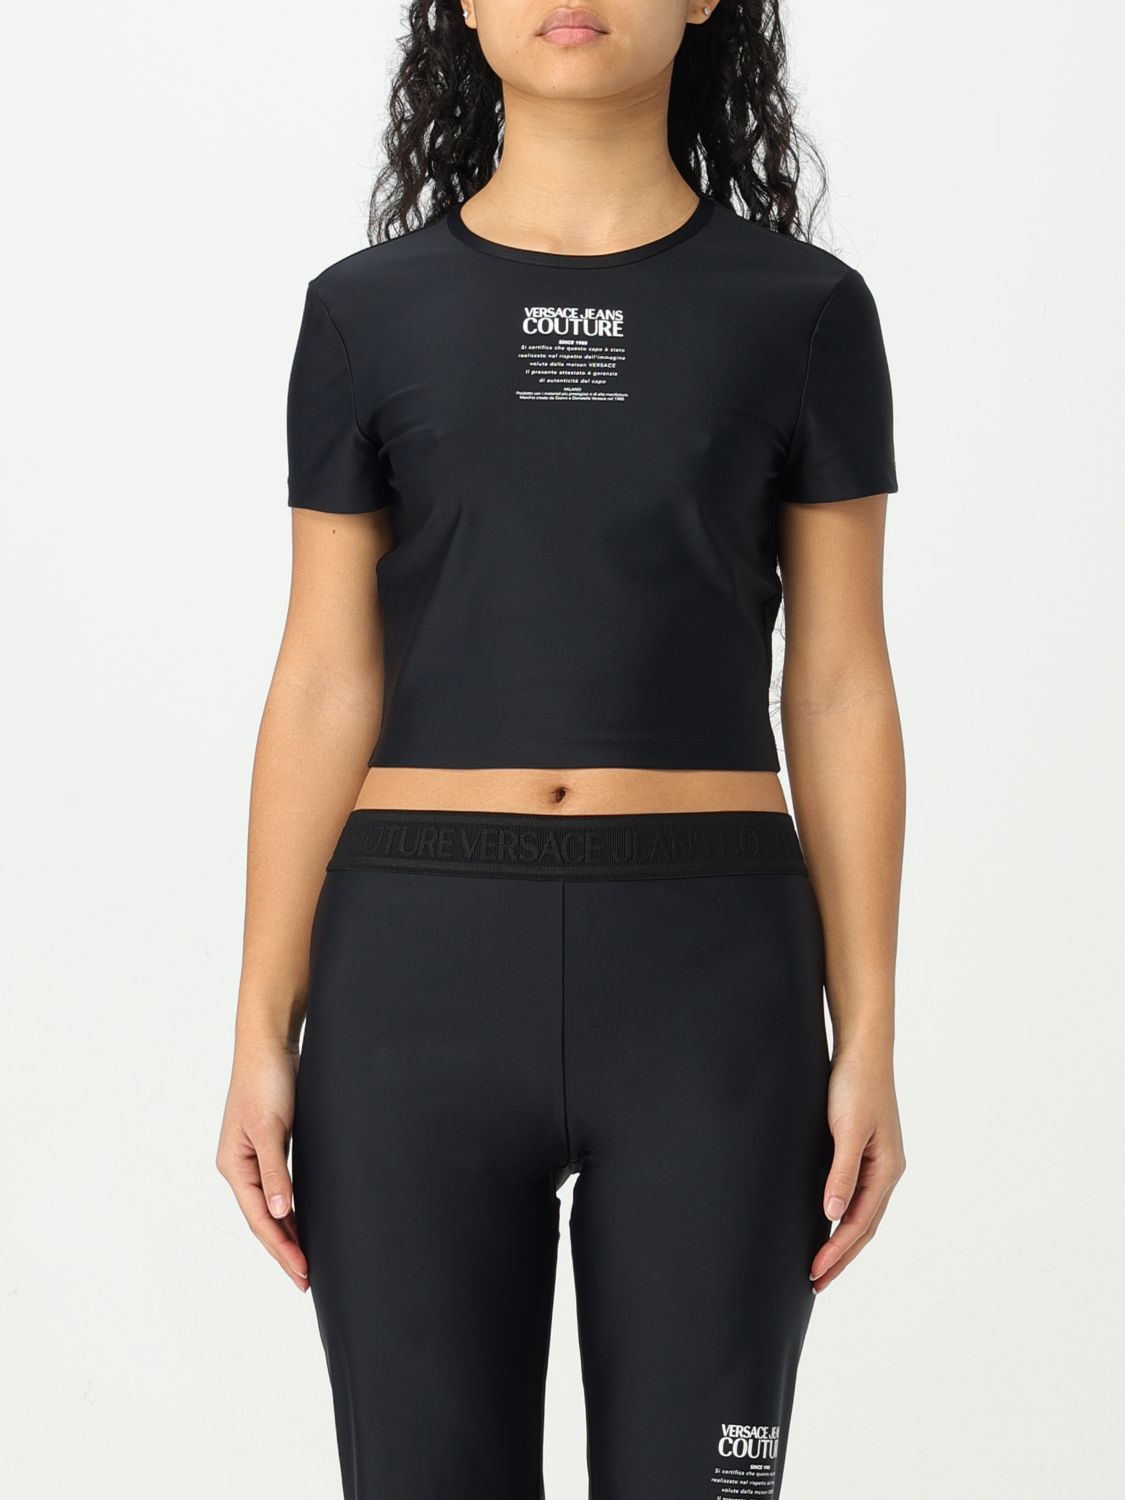 Shop Versace Jeans Couture T-shirt  Woman Color Black